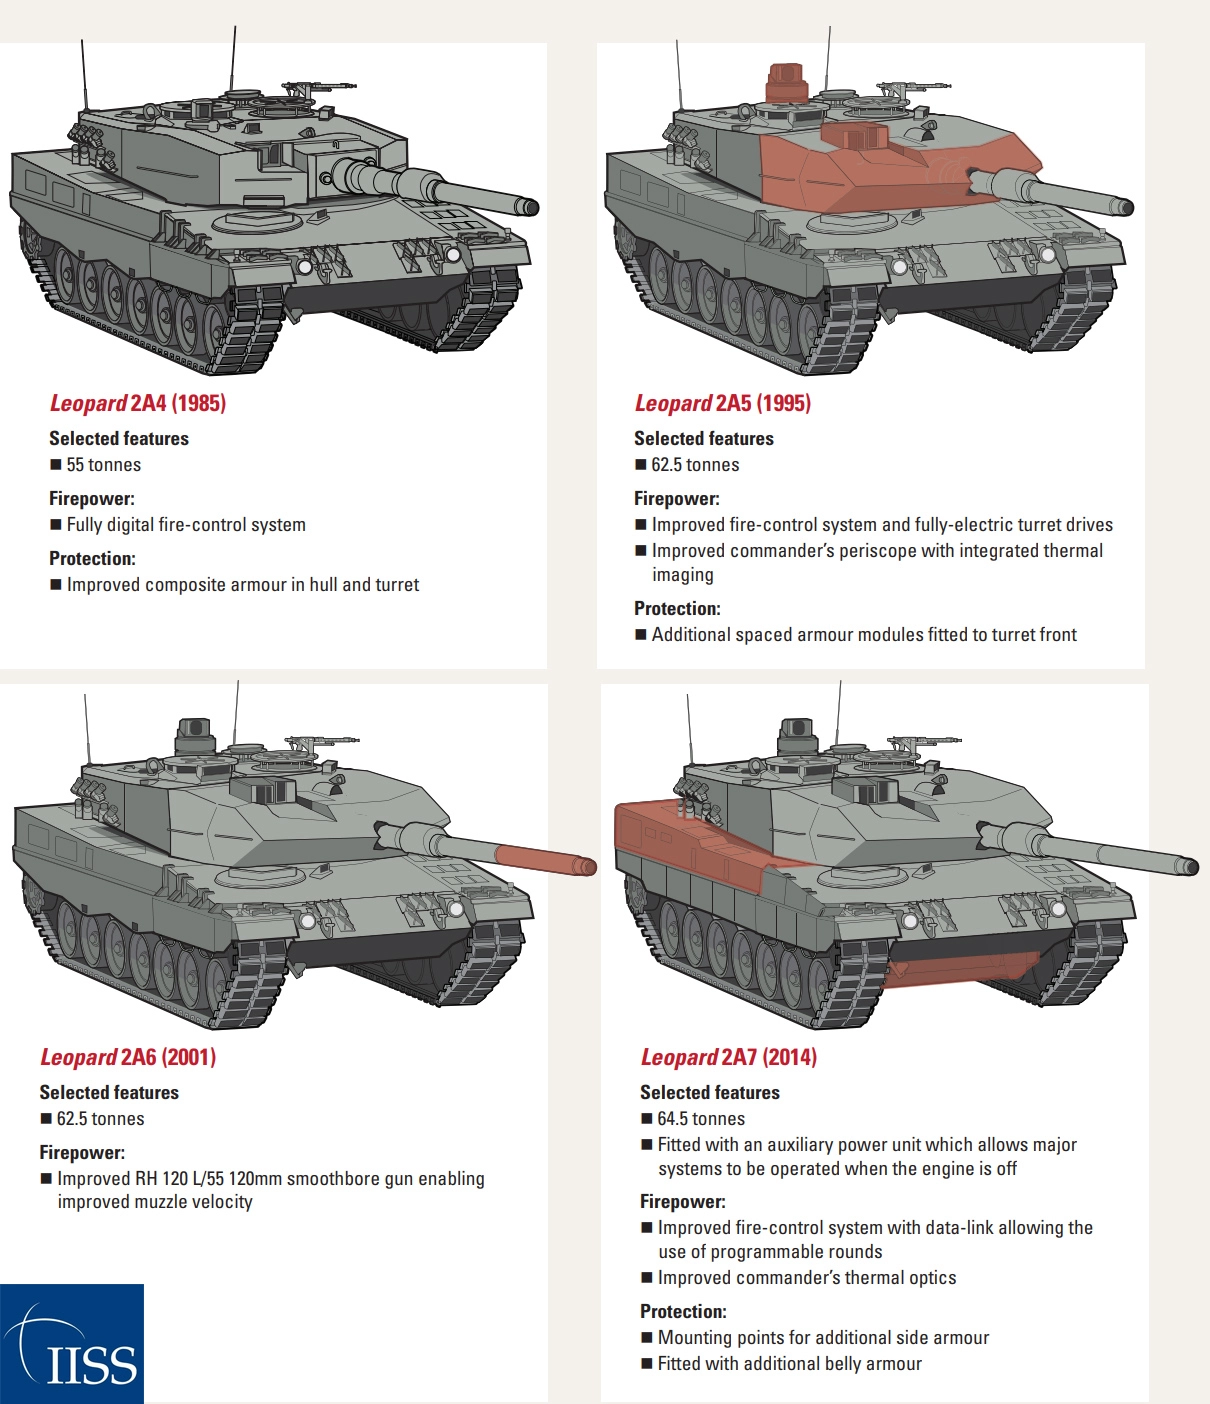 Leopard 2 evolution